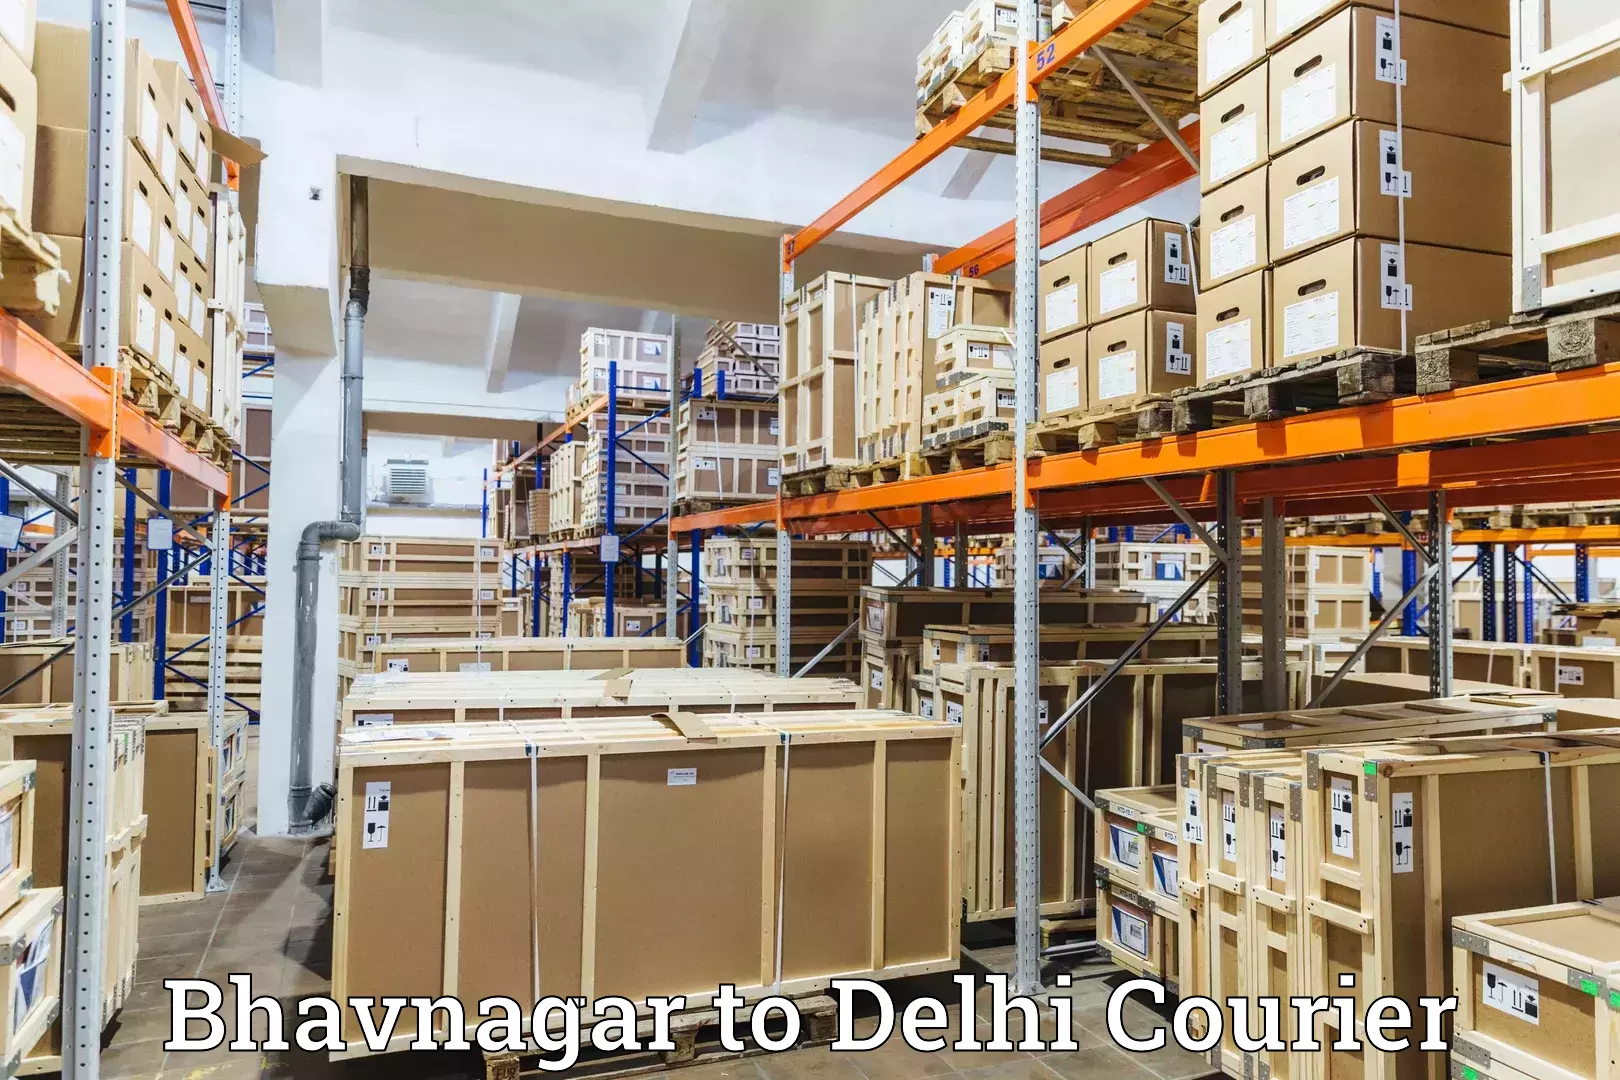 Local delivery service Bhavnagar to Delhi